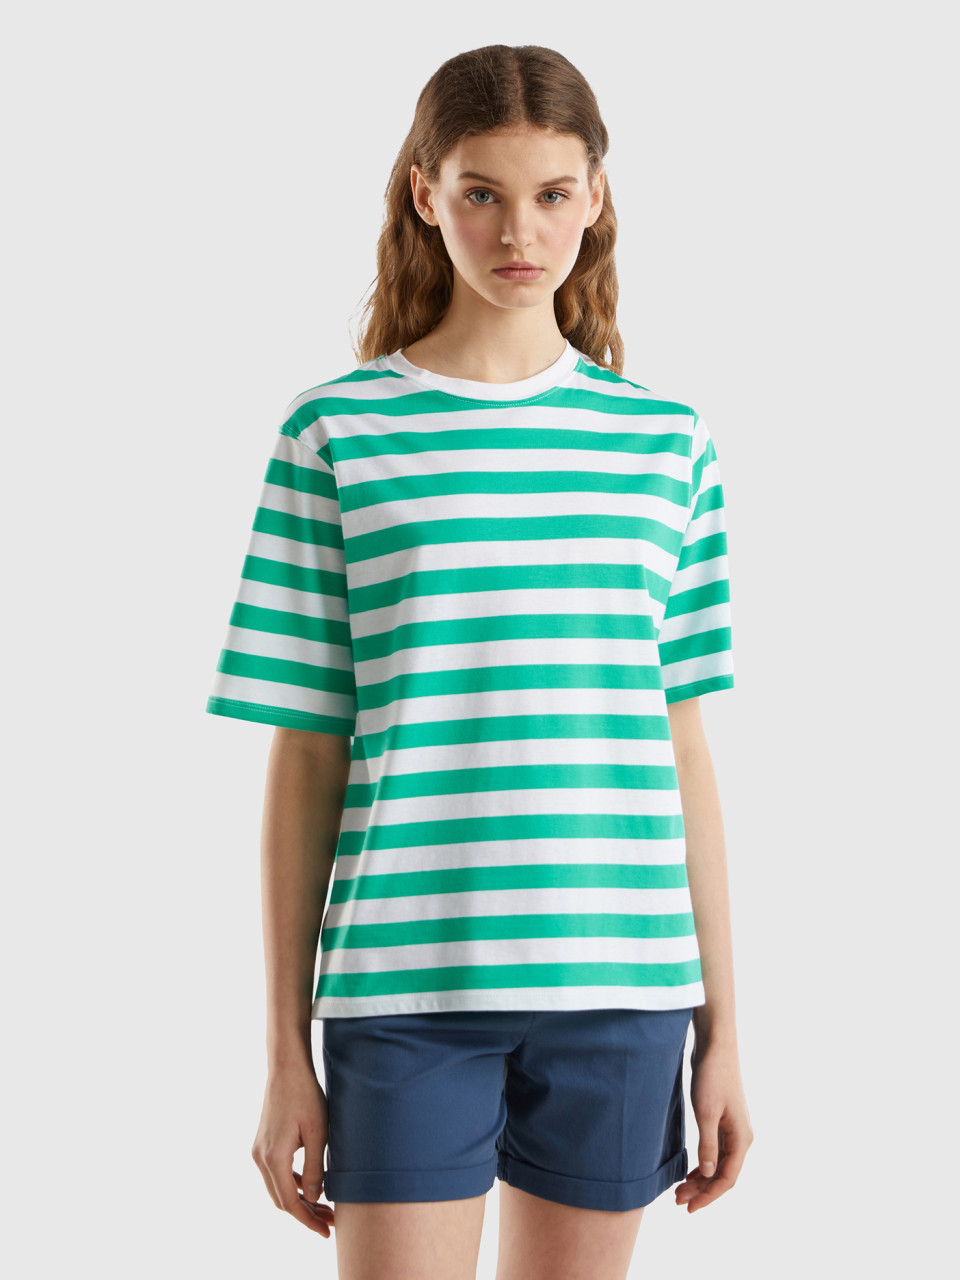 Benetton, Camiseta De Rayas Comfort Fit, Verde Petróleo, Mujer